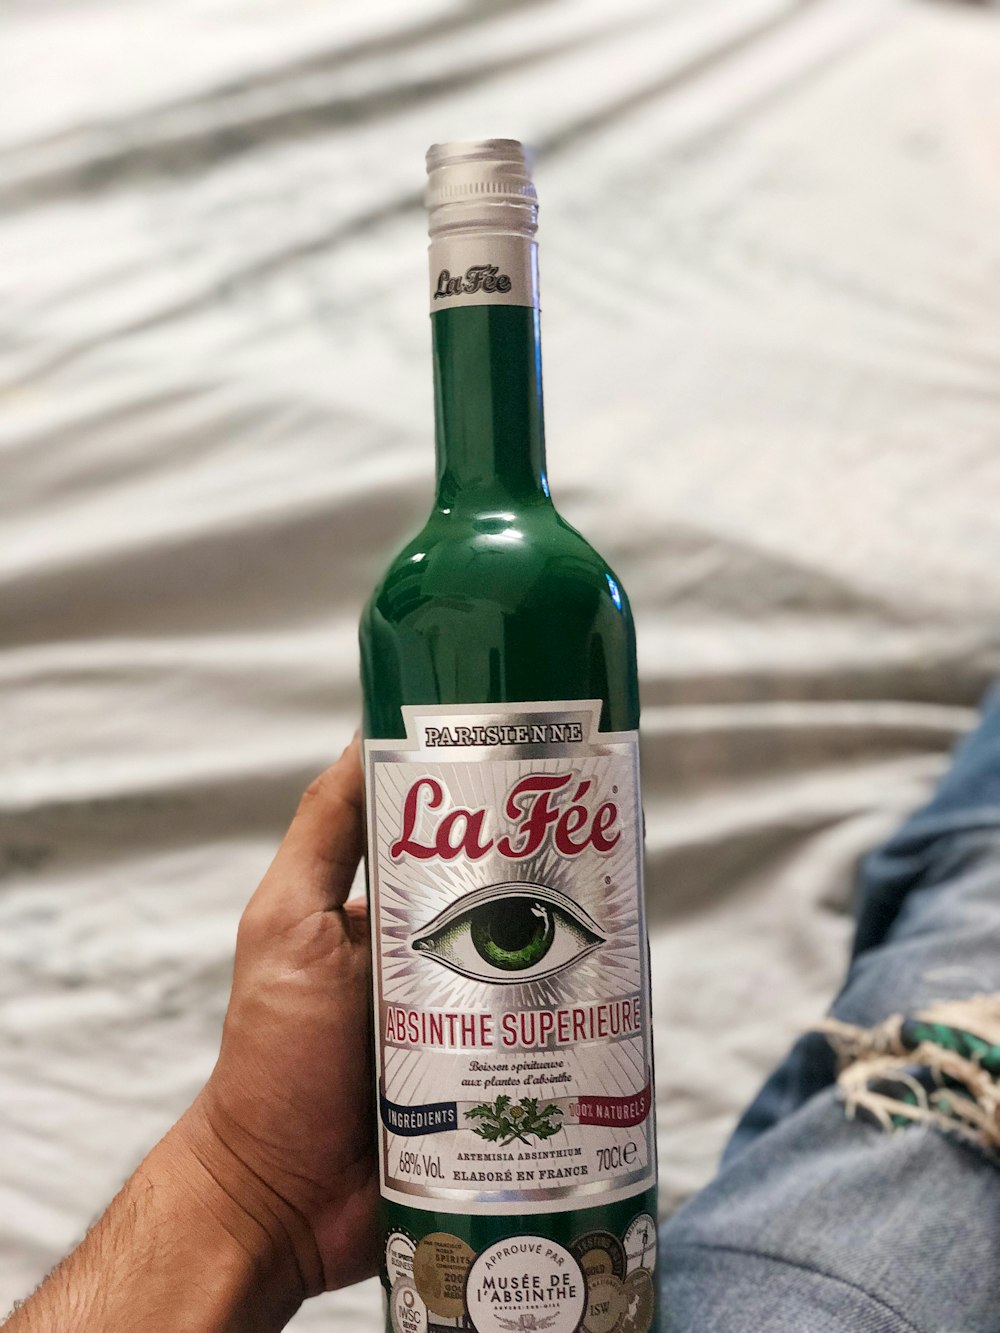 La Fee liquor bottle